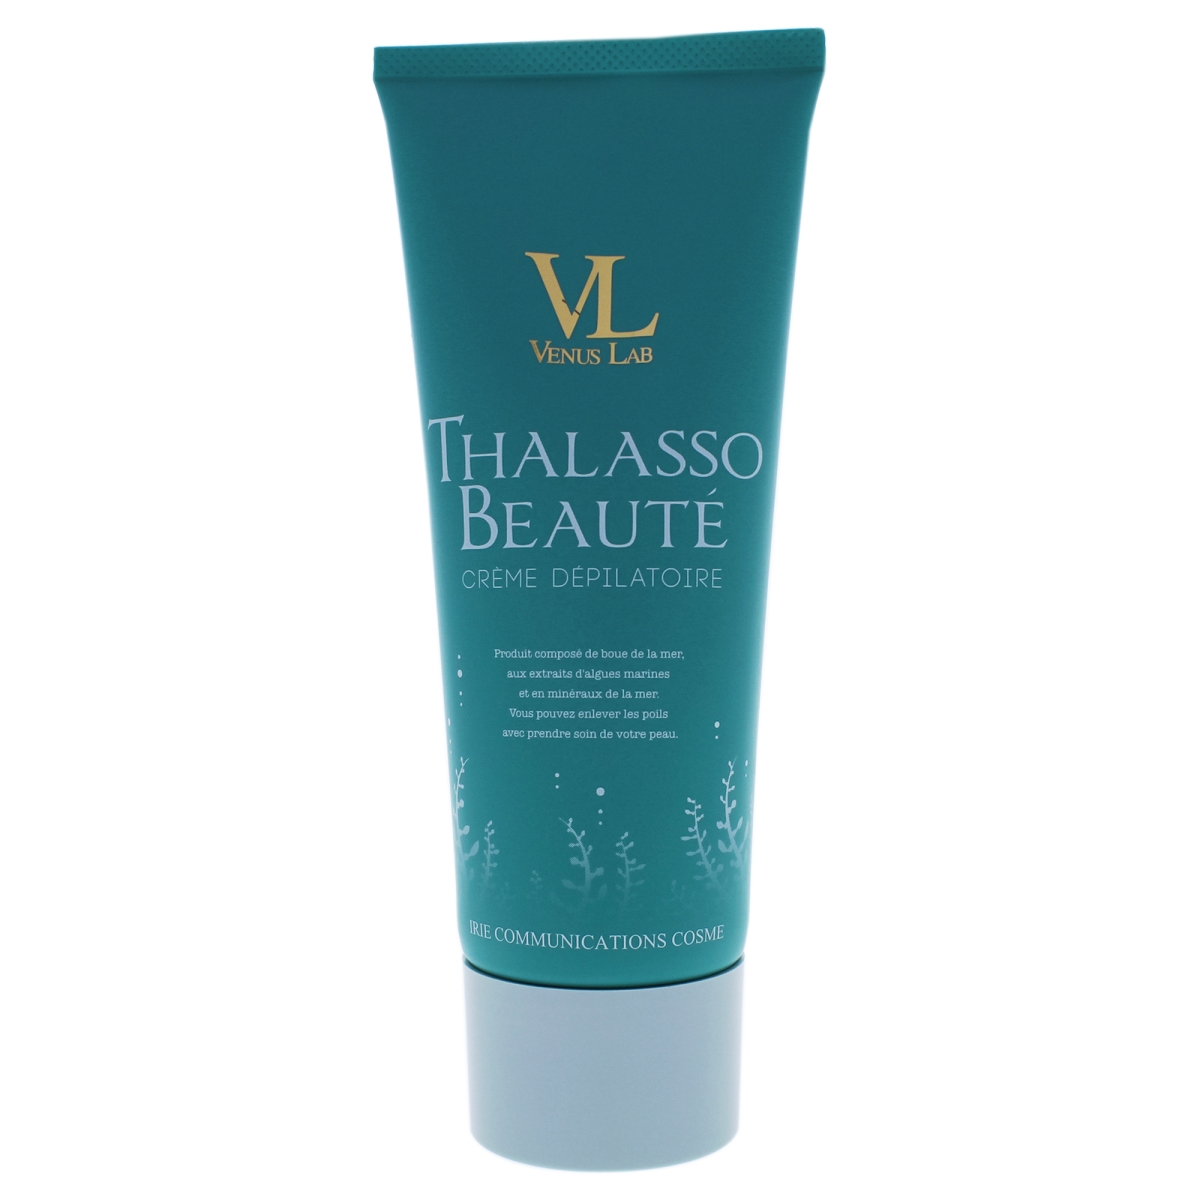 I0088337 Thalasso Beaute Hair Remover Cream For Women - 7 Oz